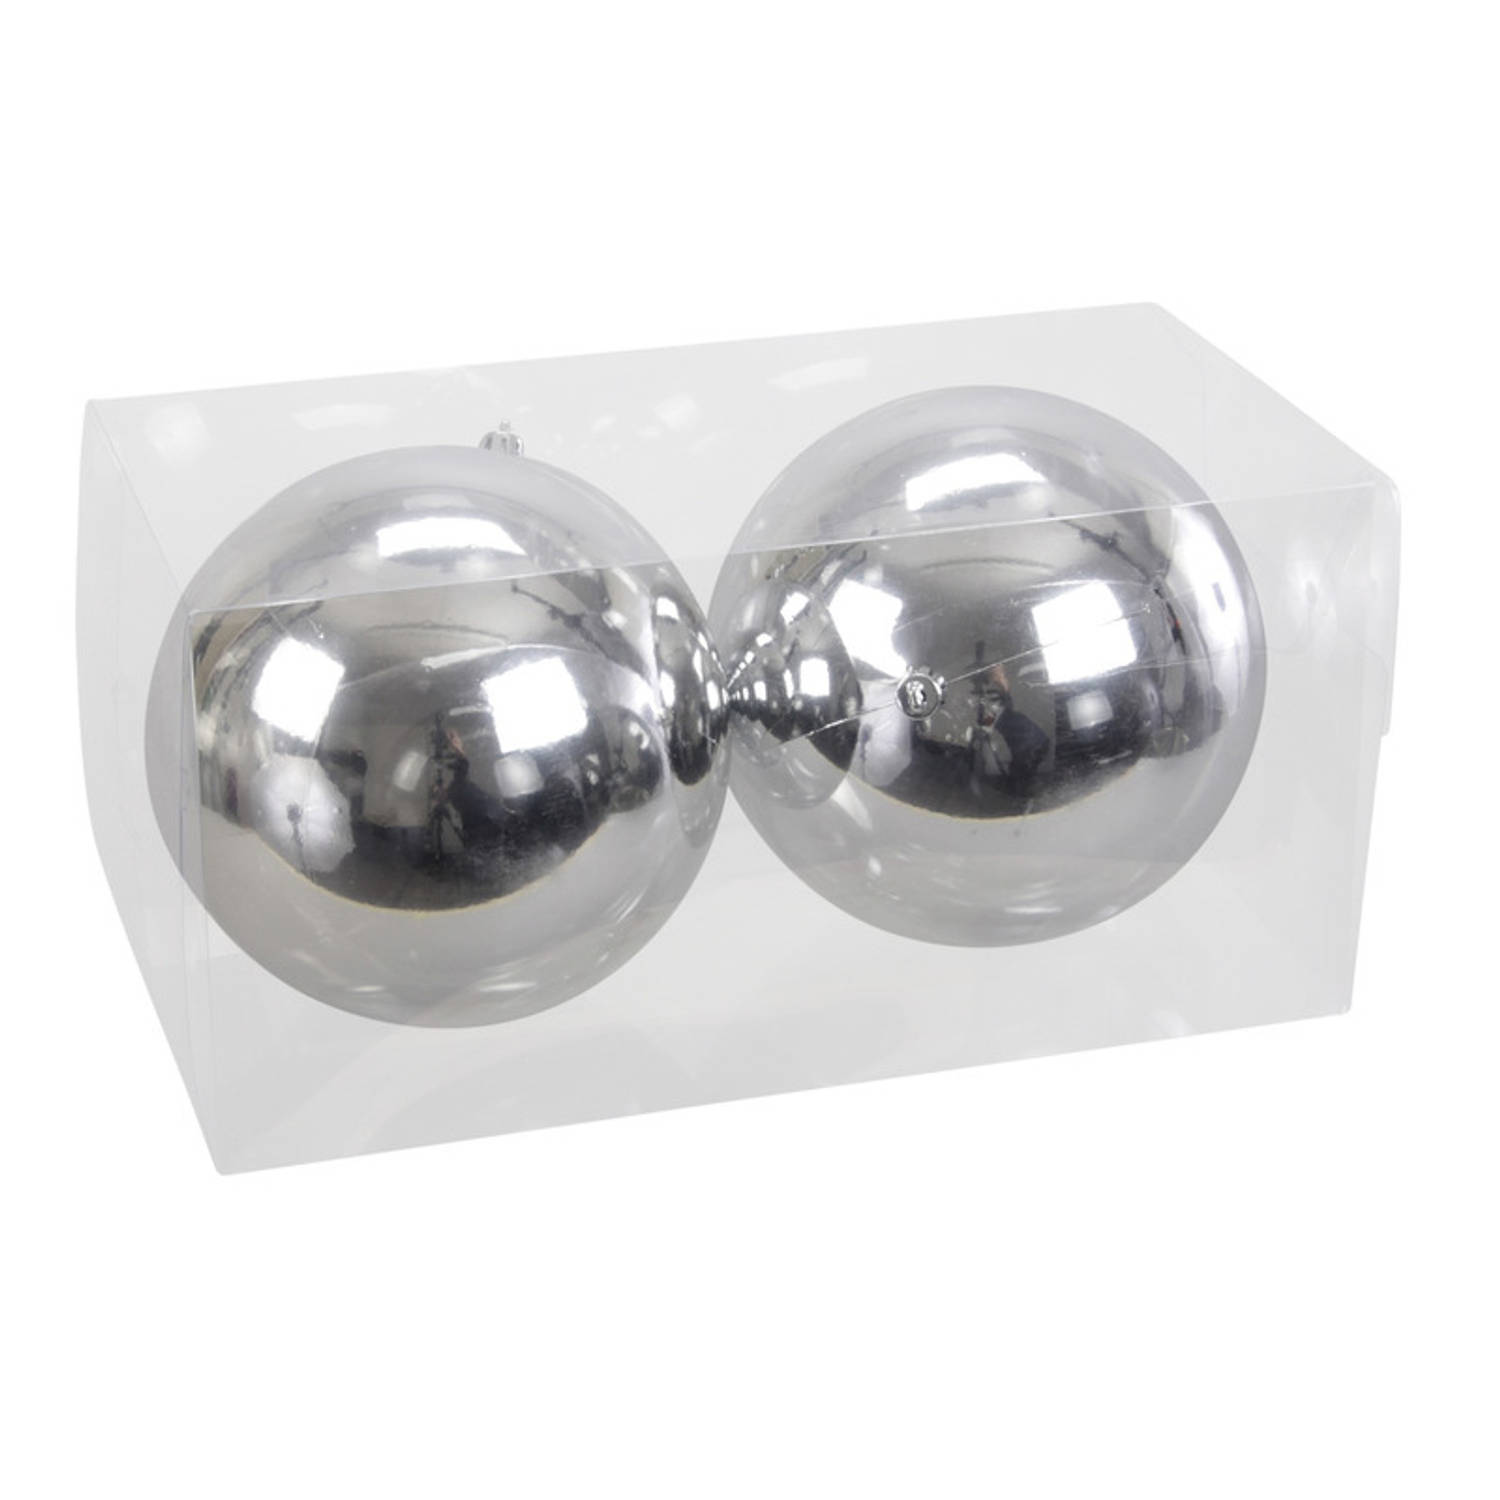 2x Grote Kunststof Kerstballen Zilver Glanzend 15 Cm Grote Onbreekbare Kerstballen